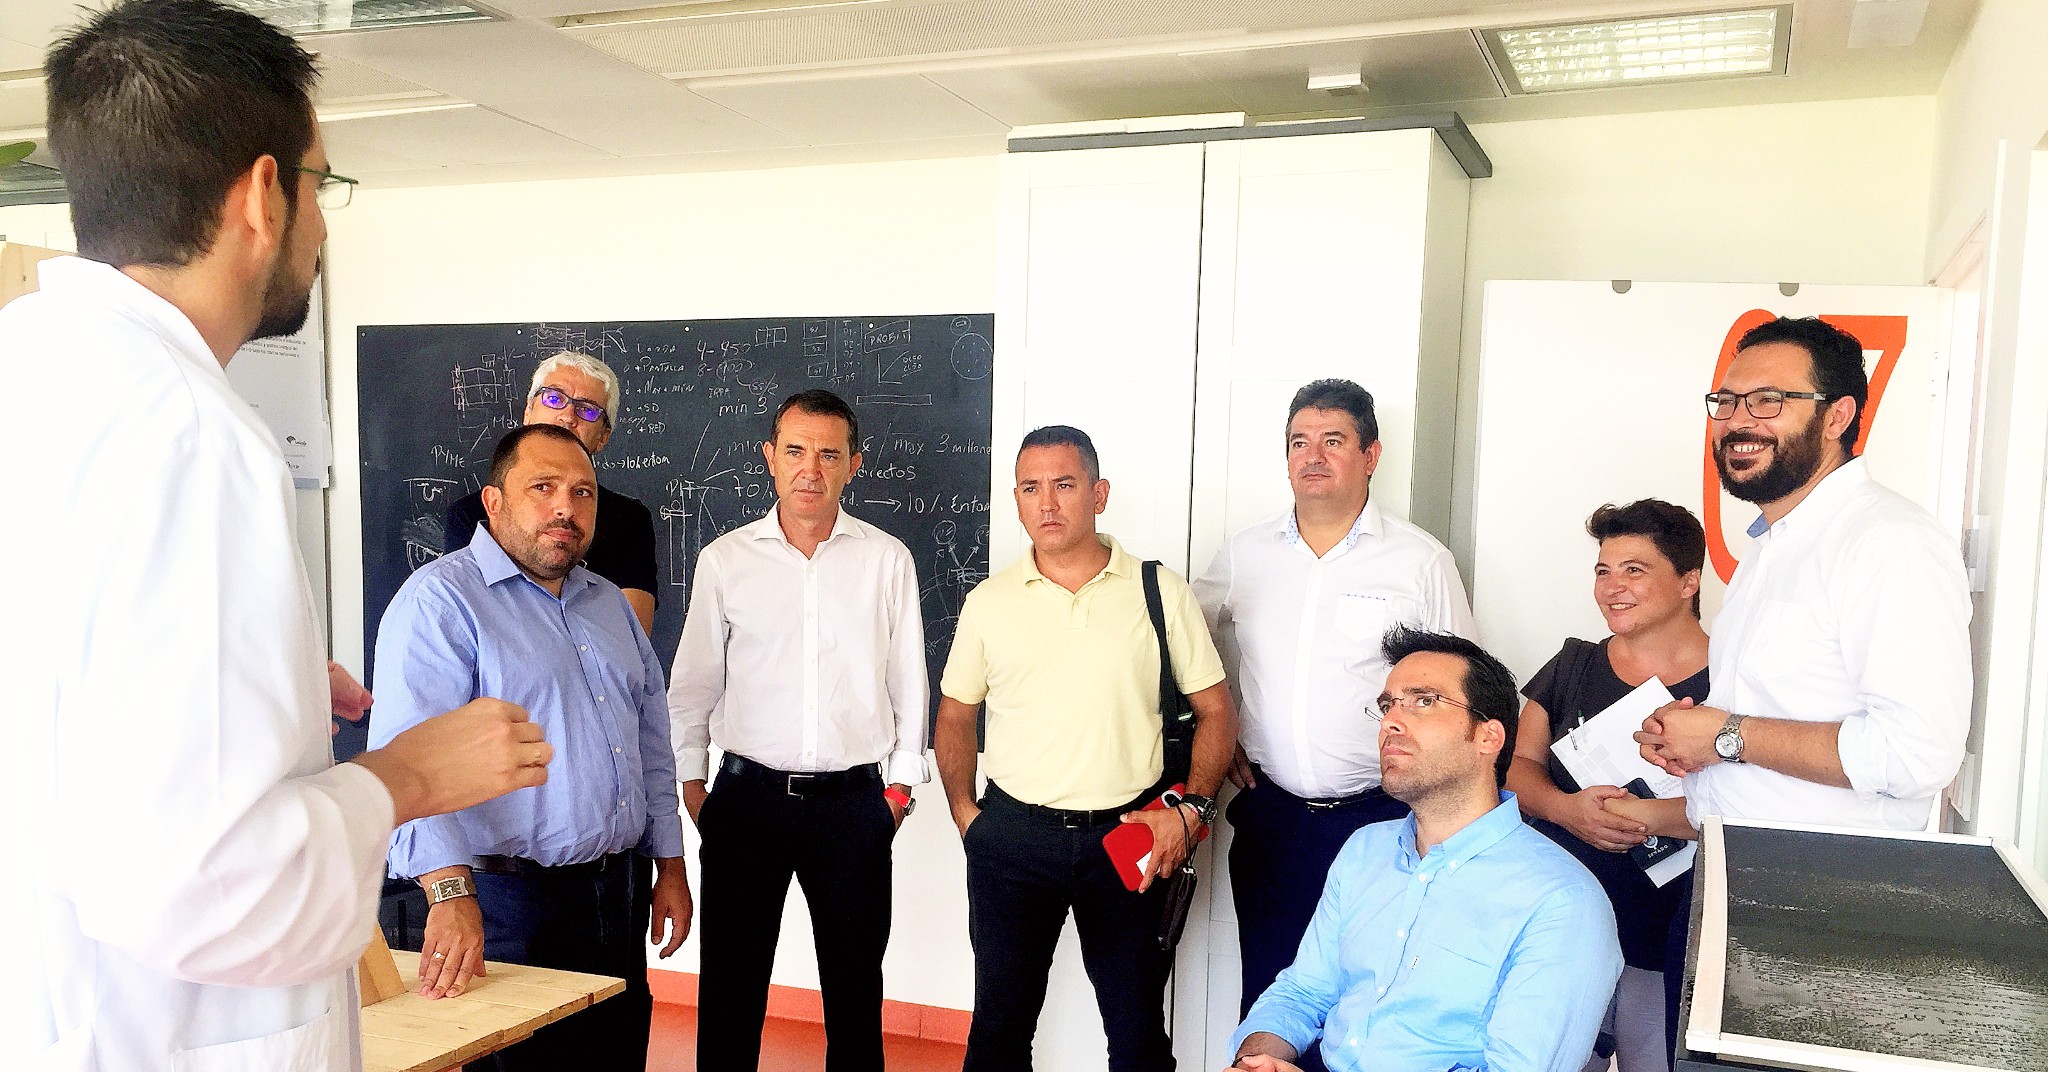 Visita realizada al PITA por el portavoz del Grupo Municipal Socialista en el Ayuntamiento de Almería, Juan Carlos Pérez Navas, junto a miembros de su equipo